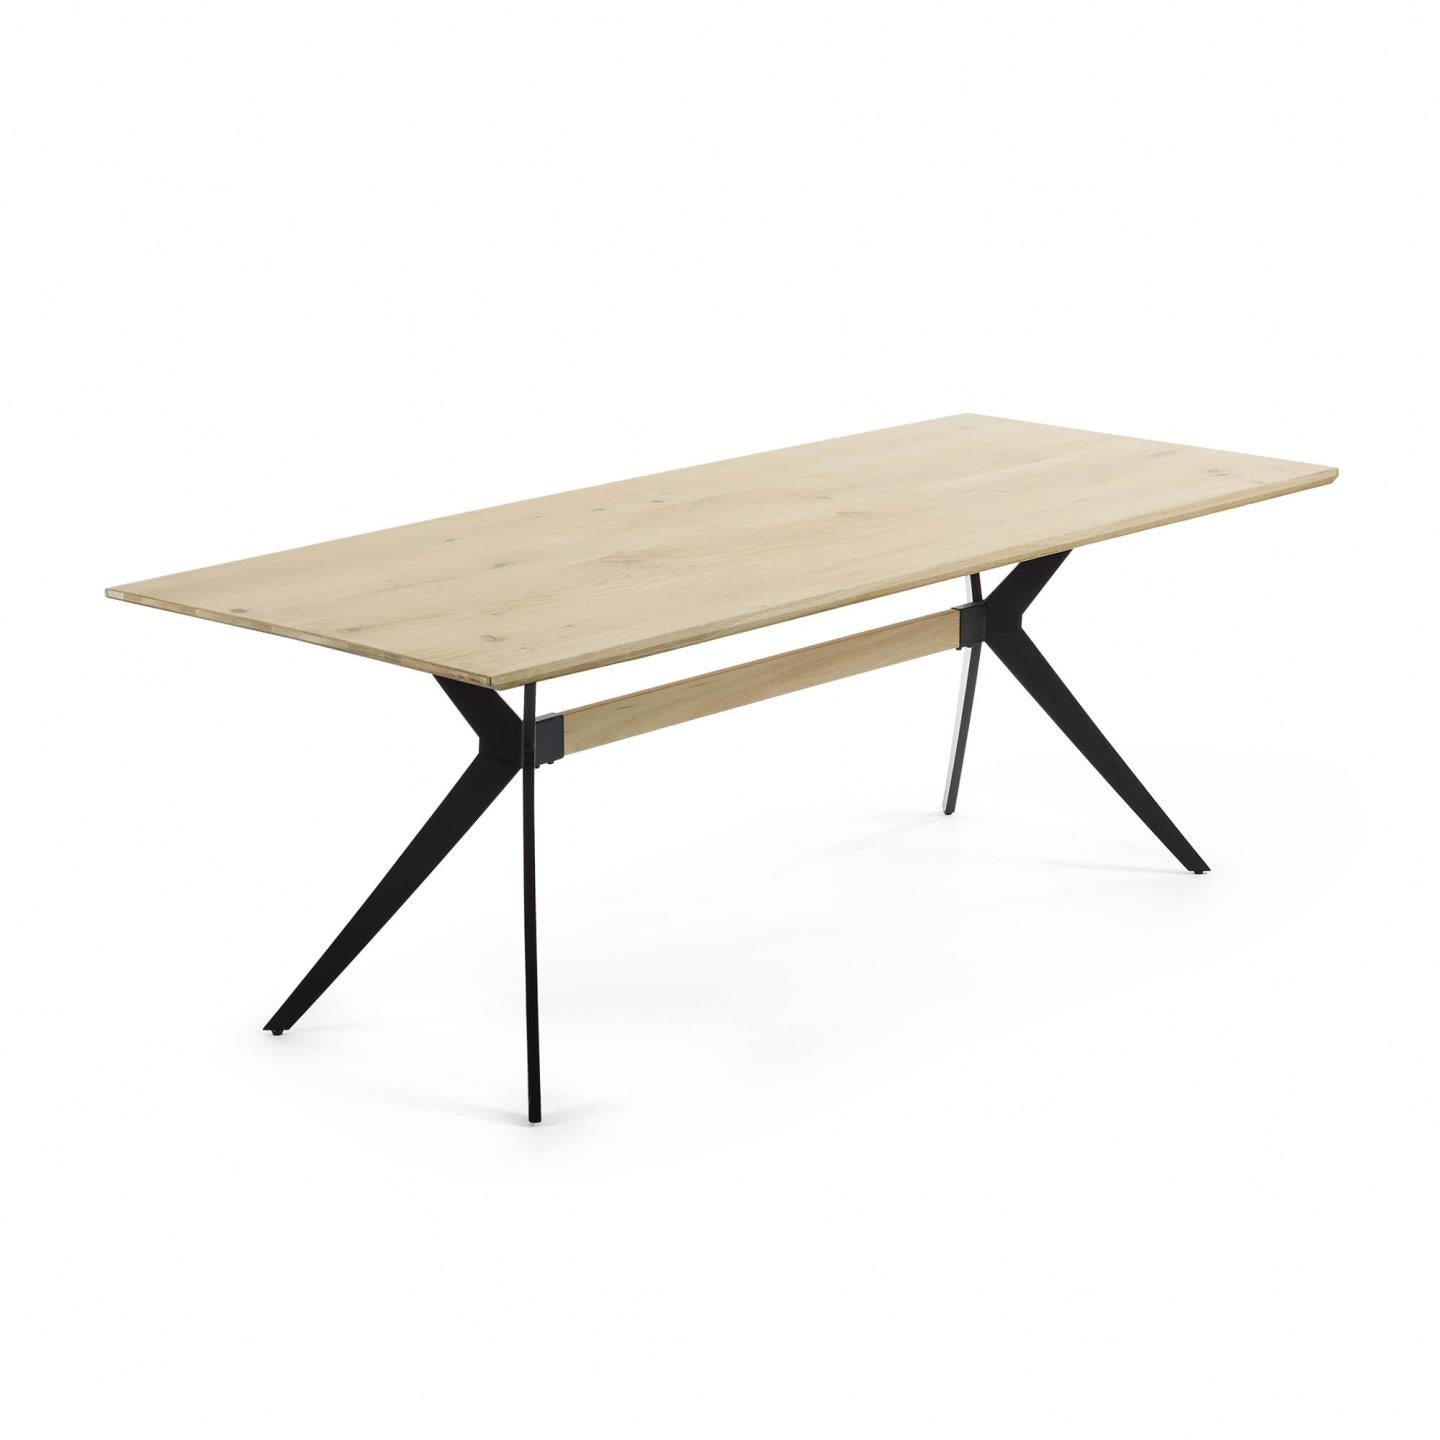 Amethyst tölgyfa furnéros asztal fehérre meszelt felülettel és fekete acéllábakkal, 160 x 90 cm